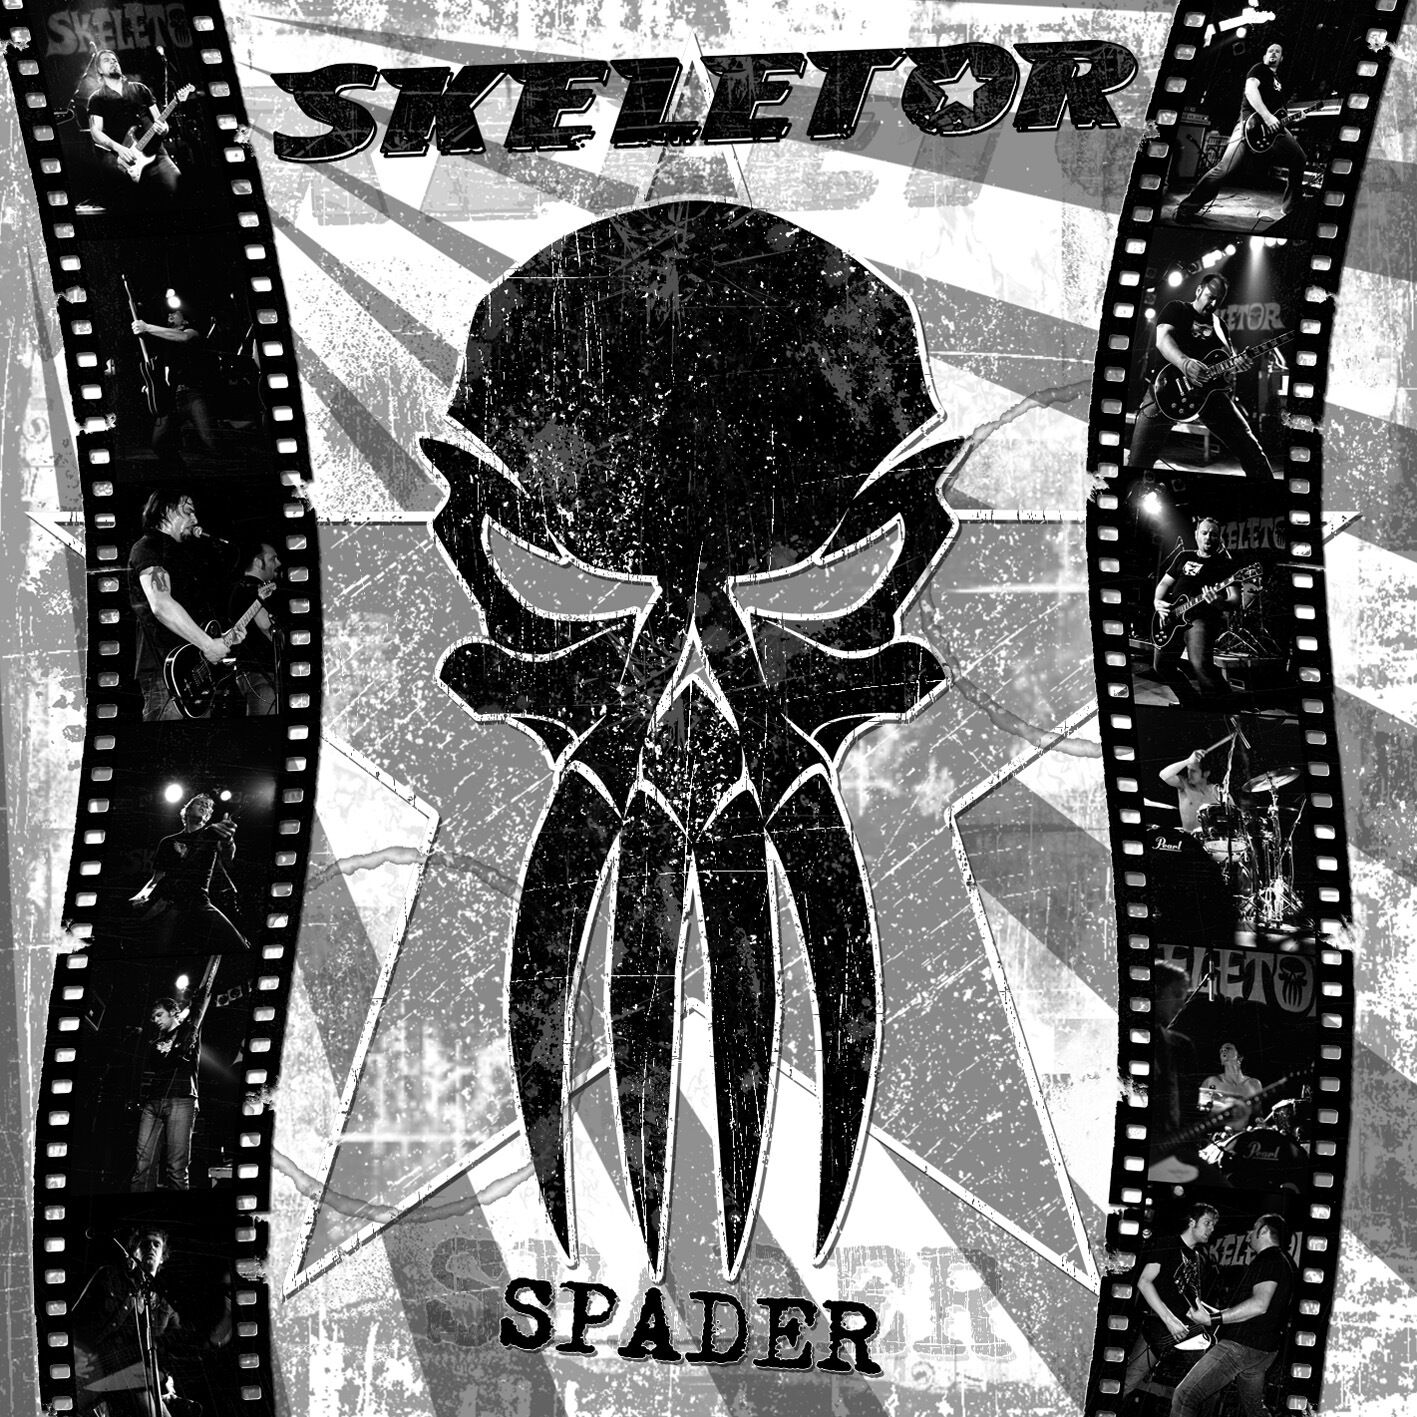 SKELETOR - Spader EP CD 2005 German HellFire Rock 'n' Roll